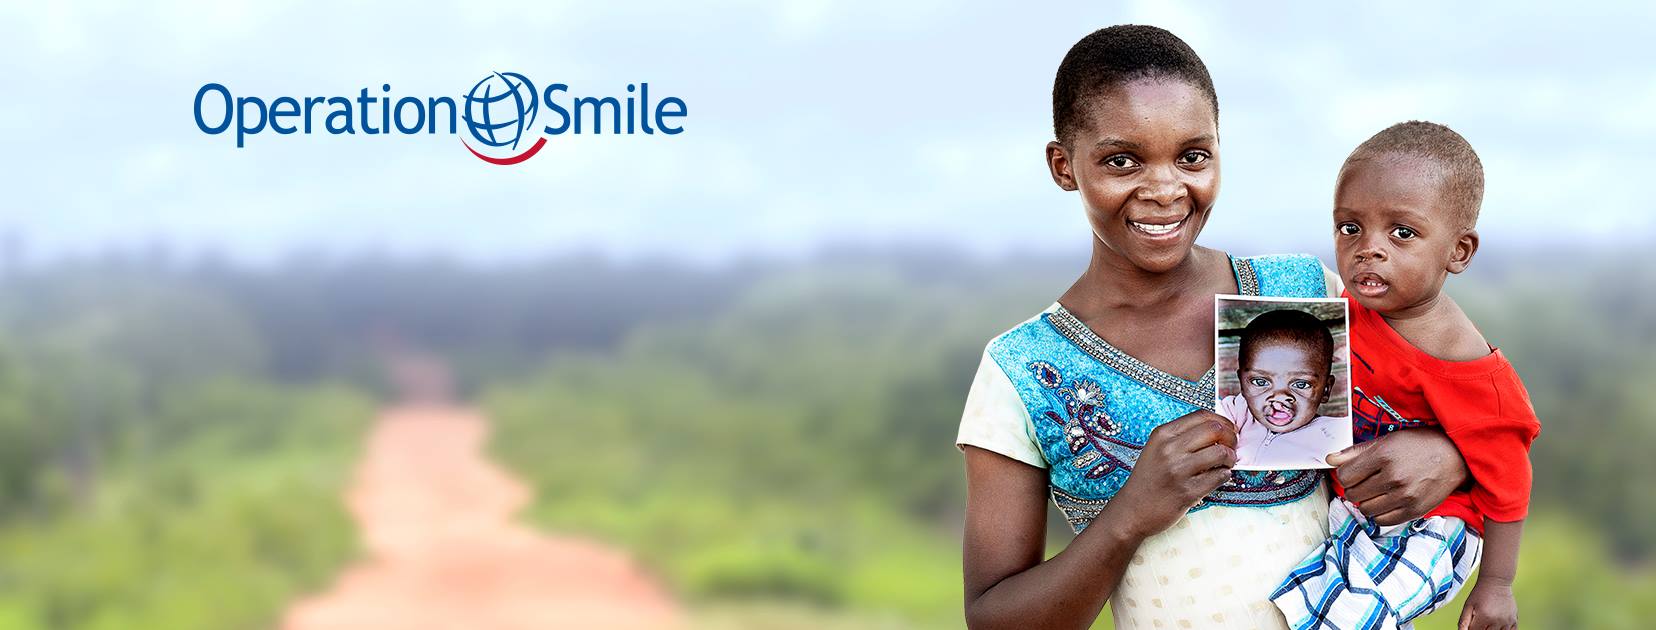 operation smile giornata mondiale per i diritti dell'infanzia